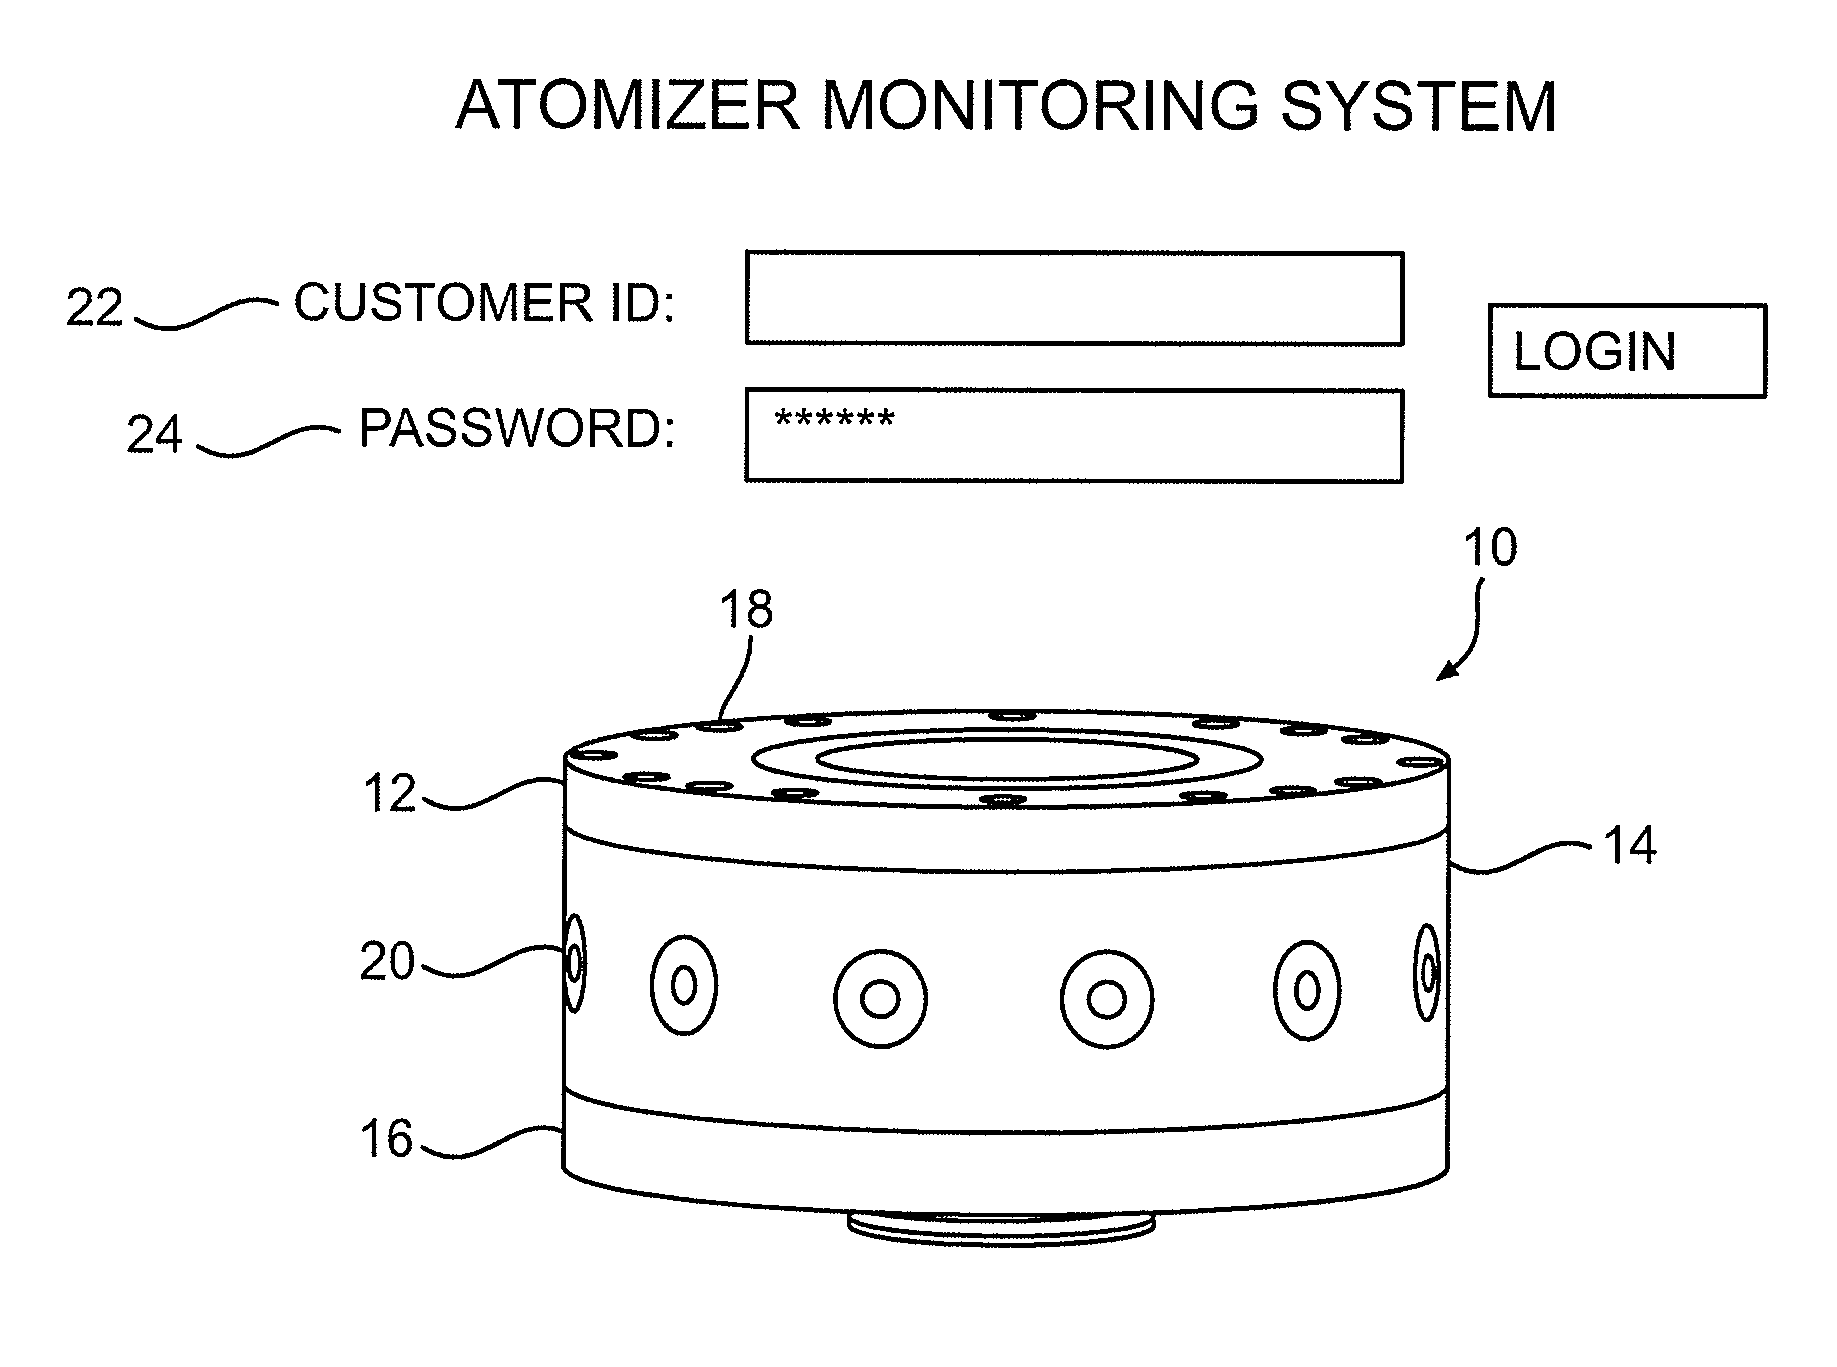 Atomizer monitoring system